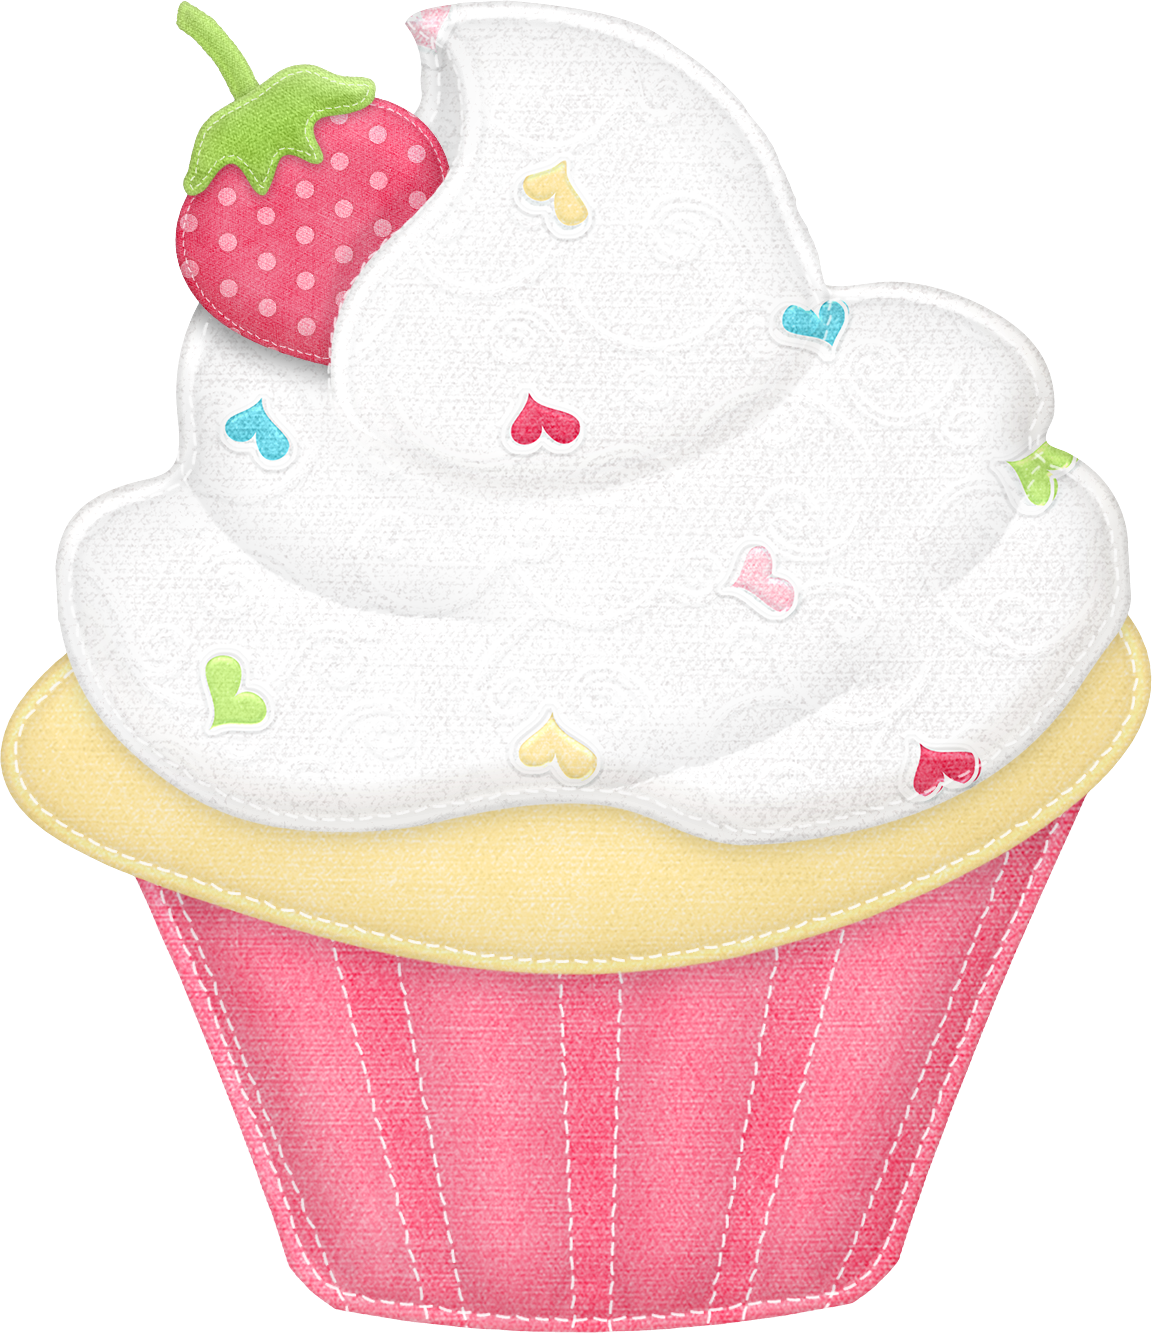 Png minus pesquisa google. Cupcakes clipart cakesclip